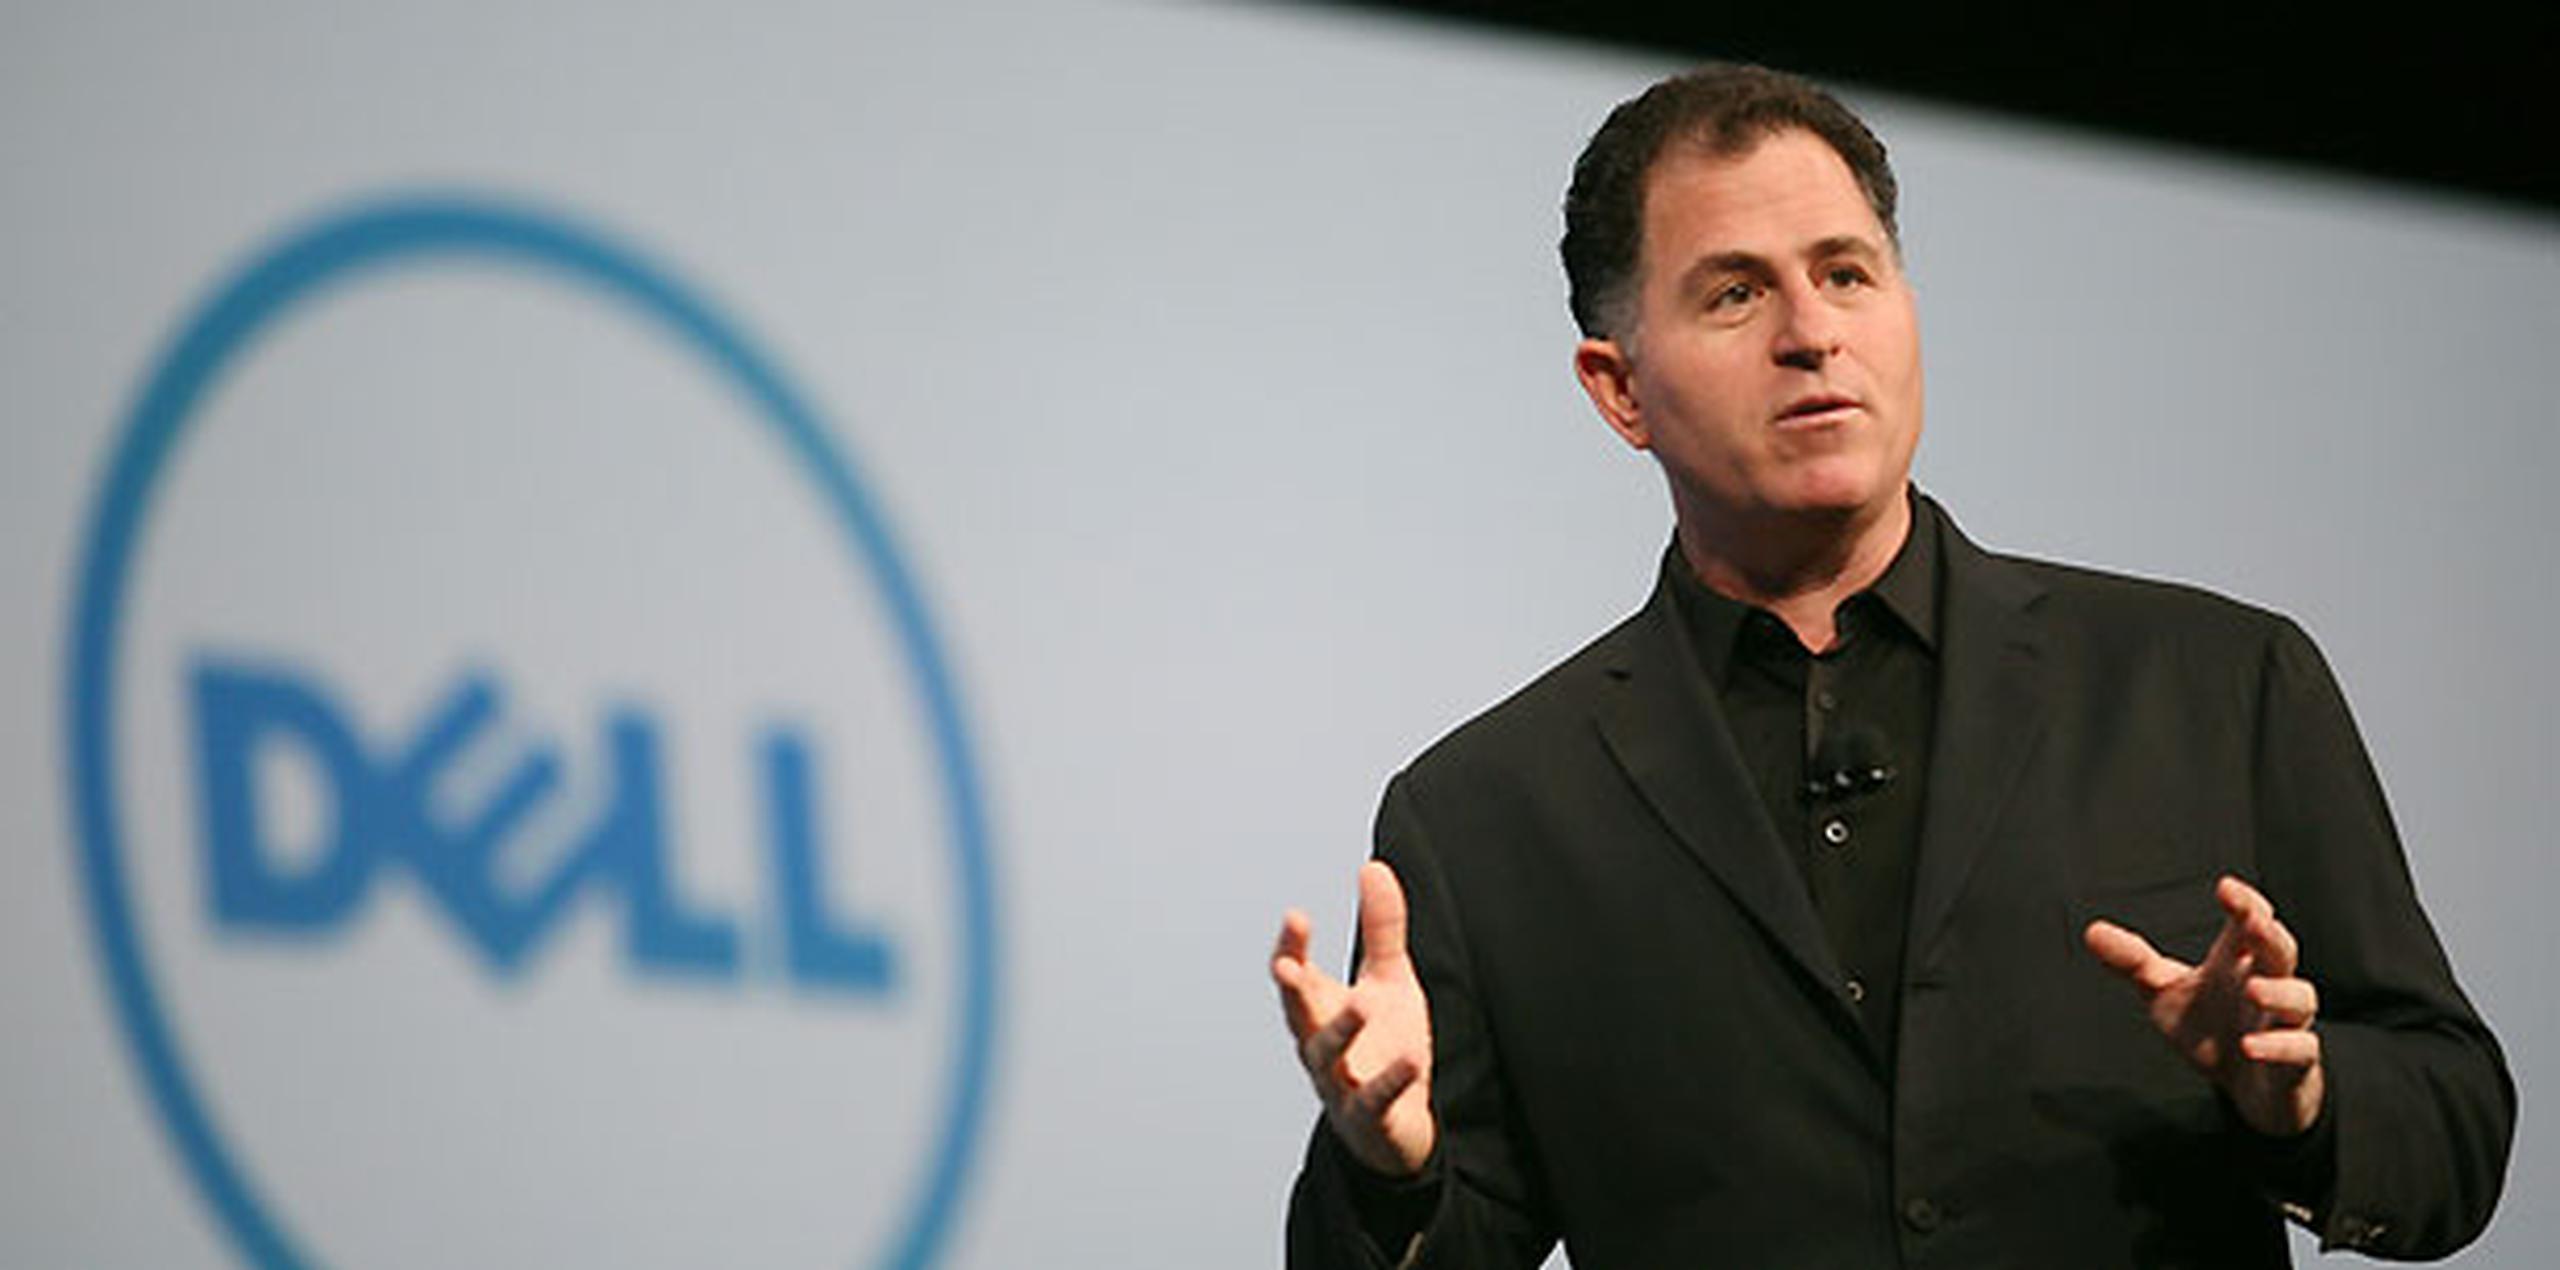 La oferta de Michael Dell cuenta con el apoyo del fondo Silver Lake y con un préstamo de $2,000 millones del gigante tecnológico Microsoft, muy interesado en la supervivencia de fabricantes de computadores que, como Dell, utilizan su sistema operativo. (AFP / Kimihiro Hoshino)